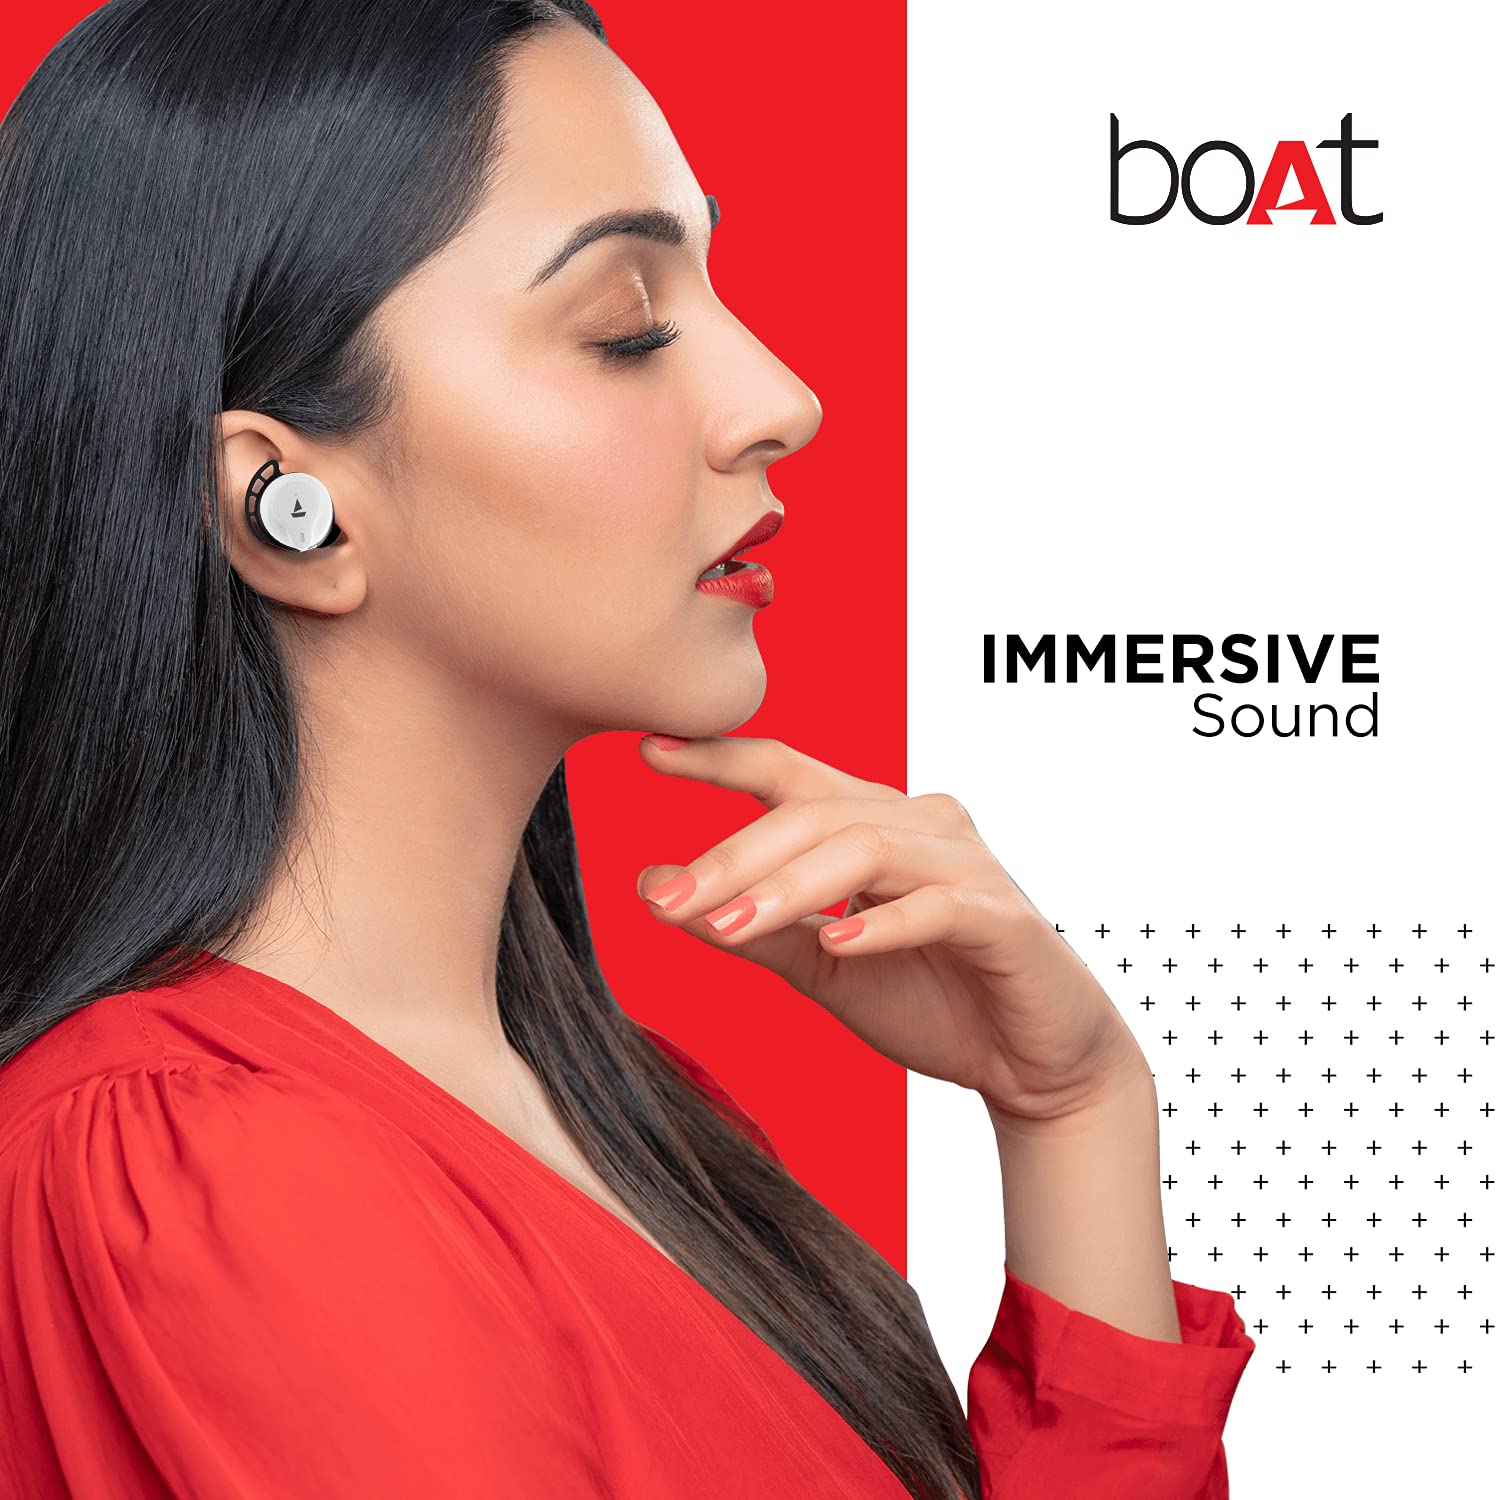 एमेजॉन की सबसे सस्ती डील, हजार रुपये से कम में खरीदें Boat के हेडफोन !